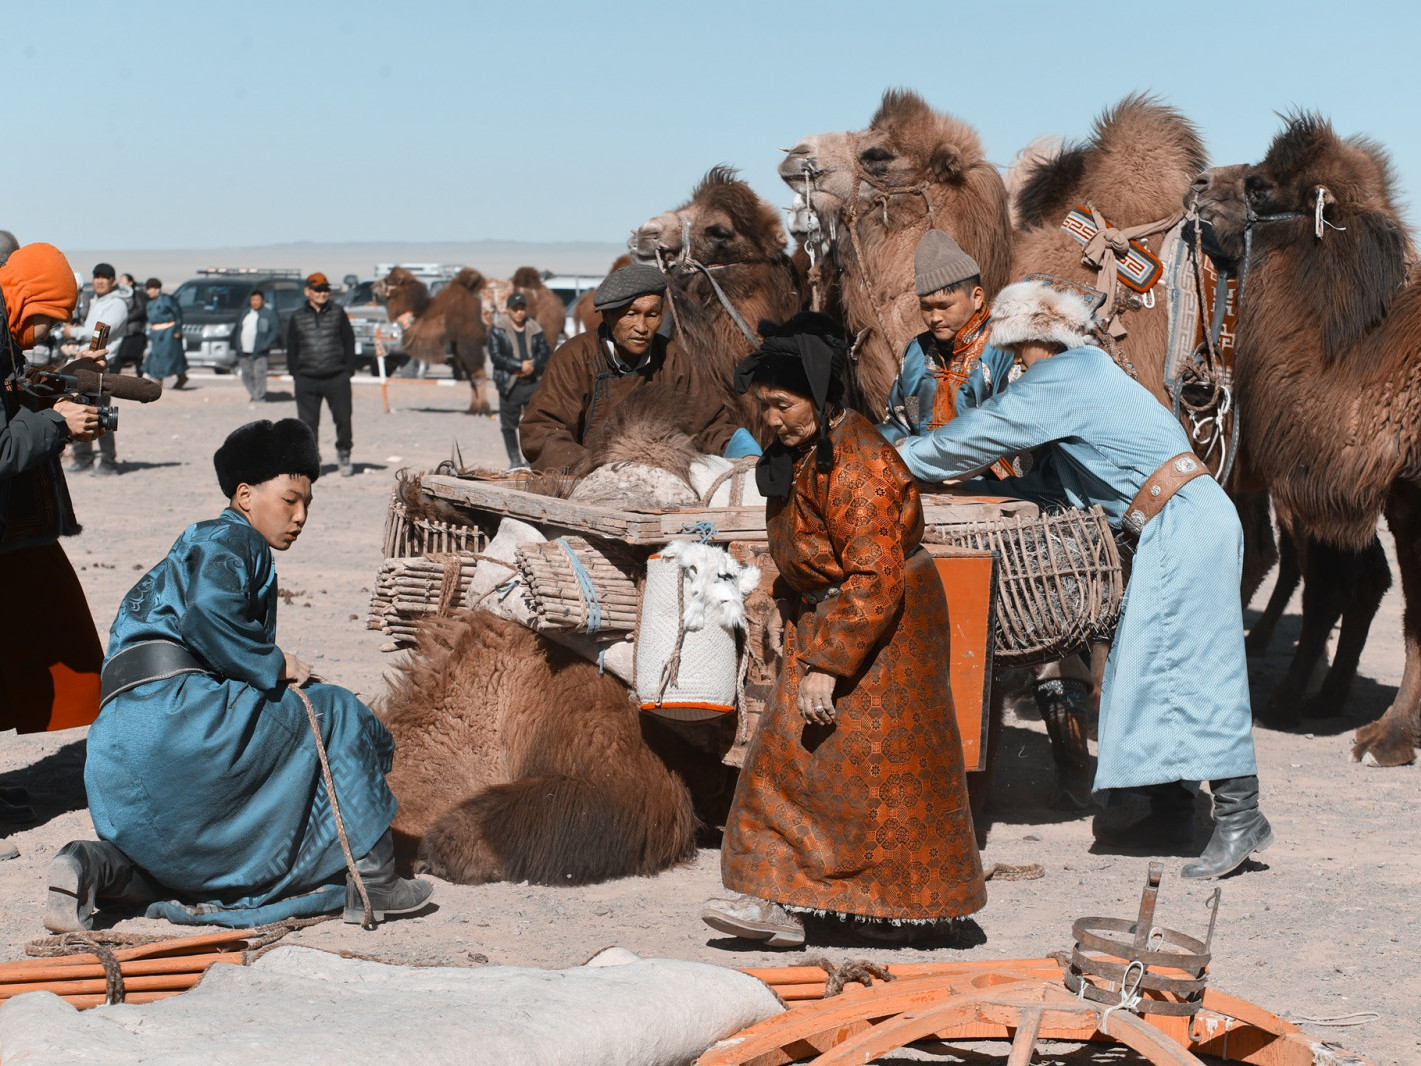 ФОТО: Түмэн тэмээний баярт 200 гаруй тэмээчид, нийт 3000 гаруй зочид төлөөлөгч оролцов